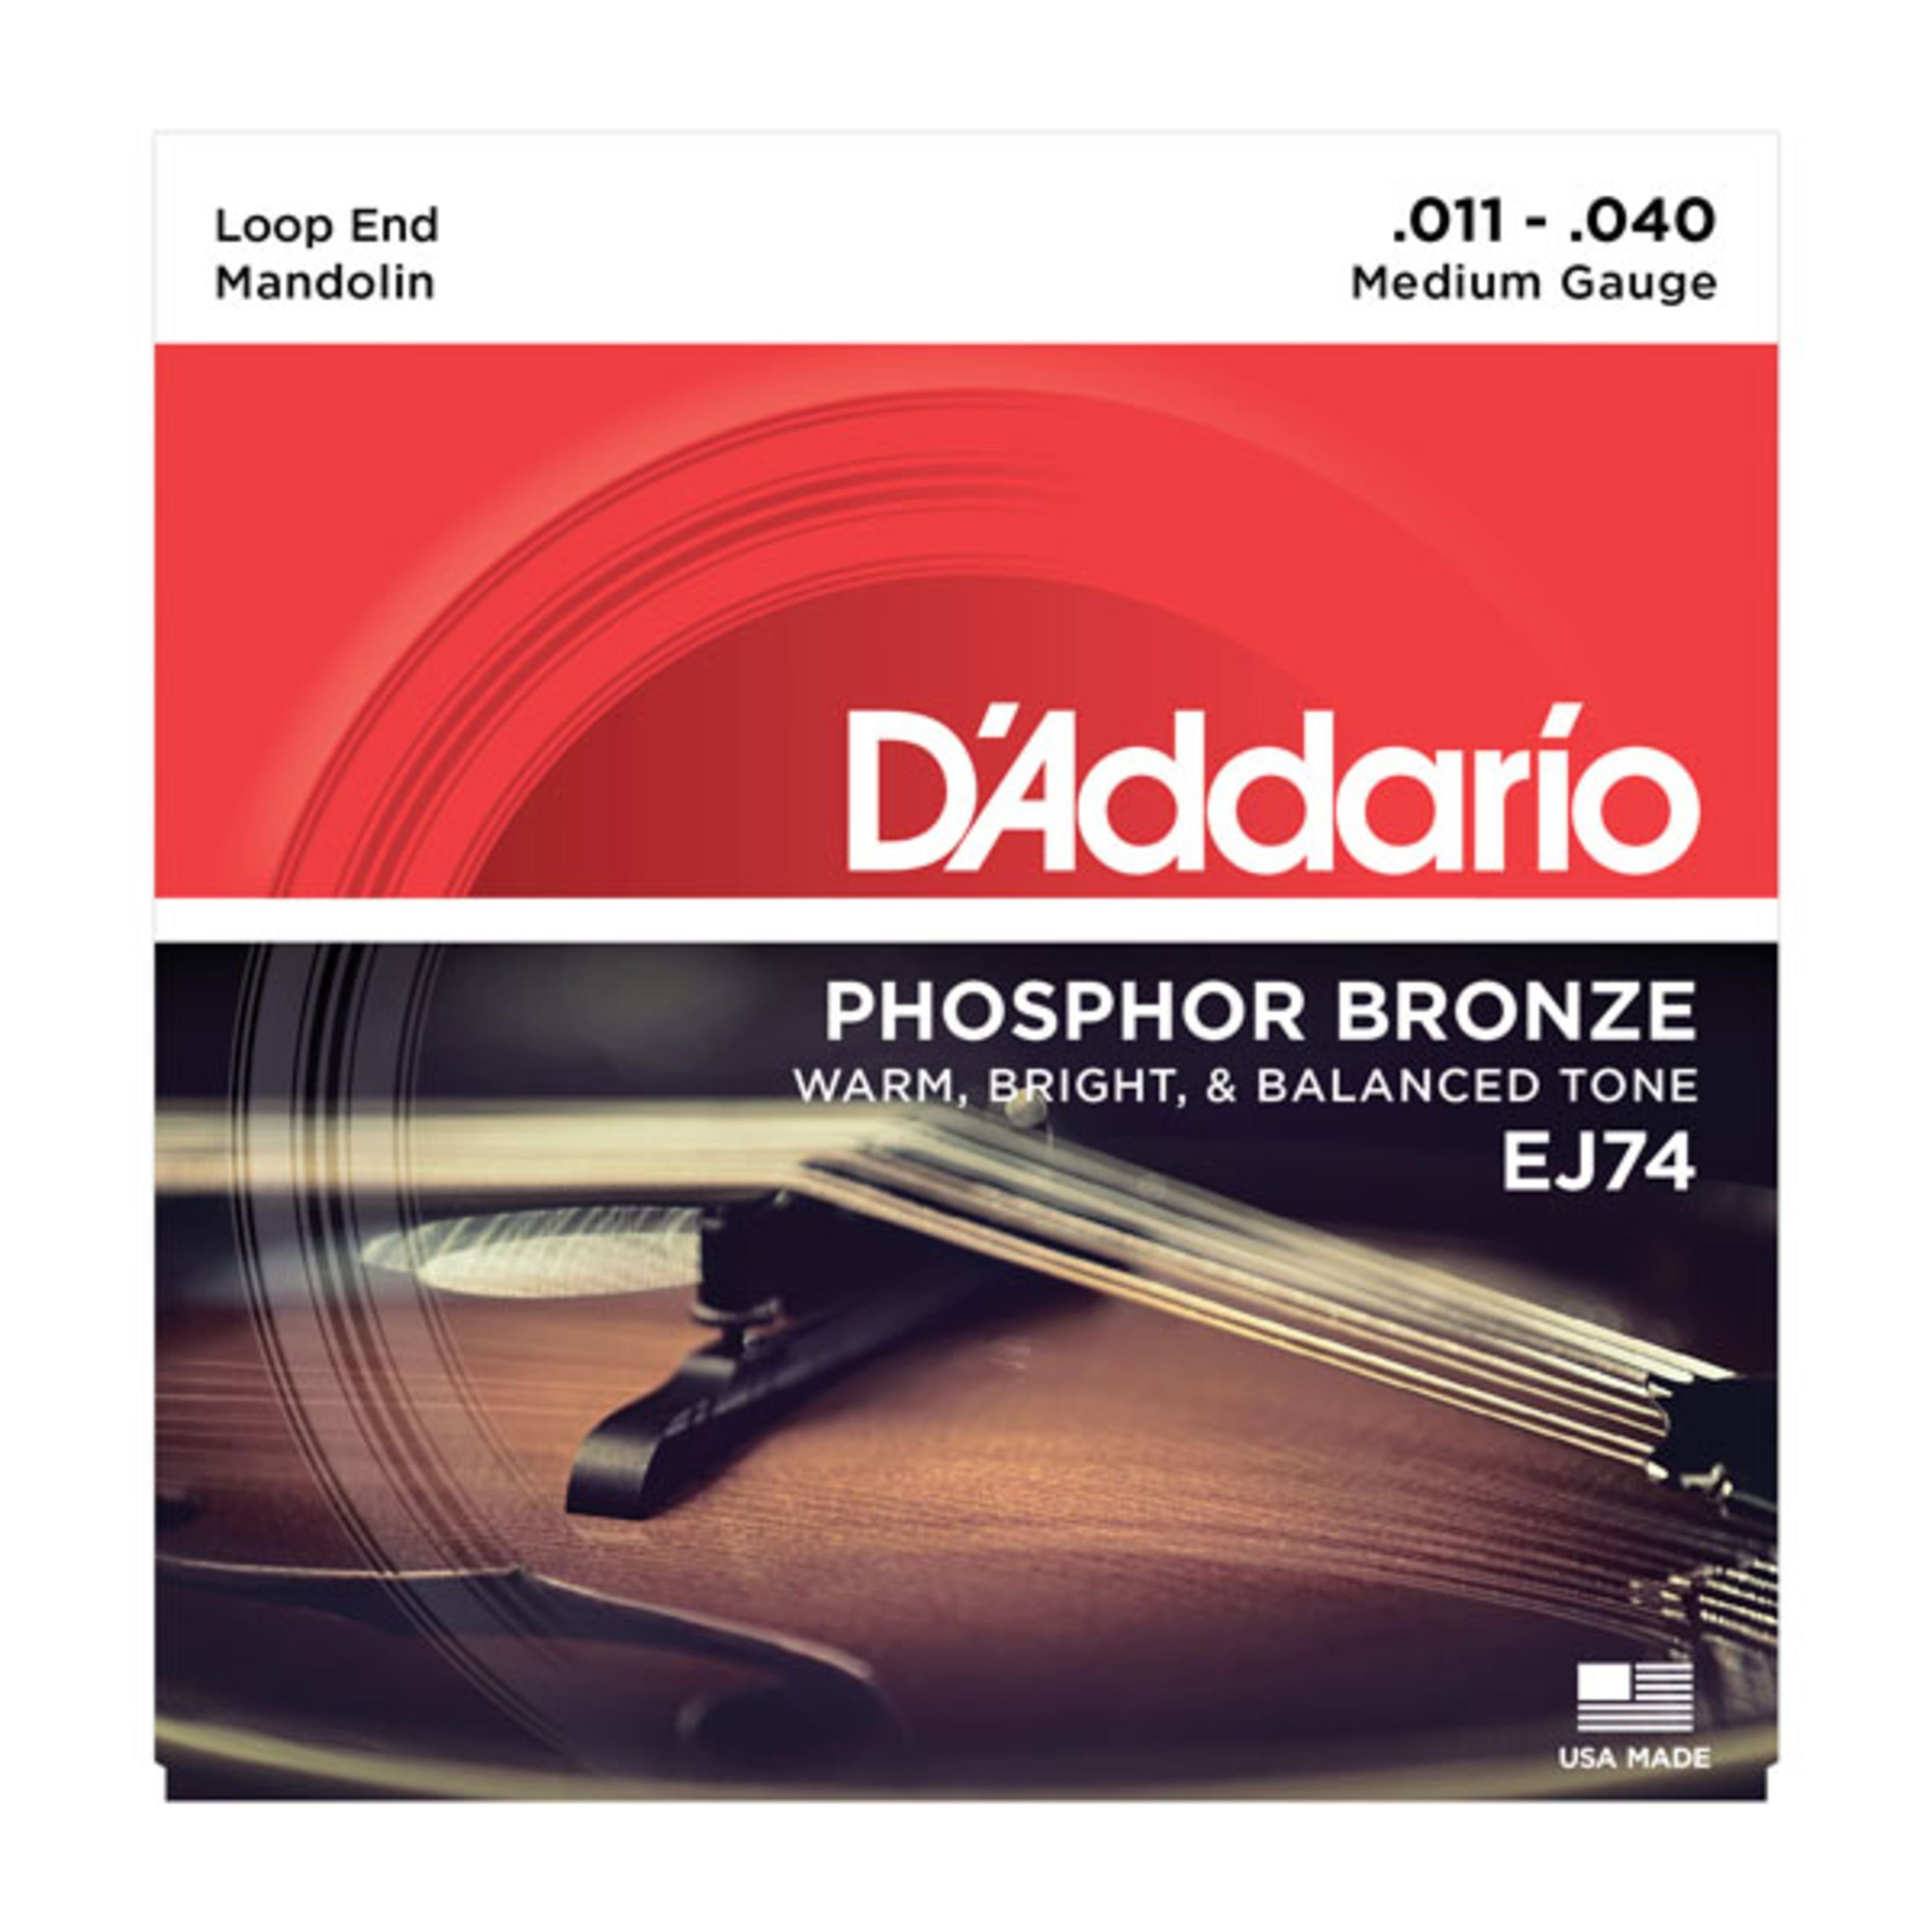 Daddario Spielzeug-Musikinstrument, EJ74 11-40 Mandolinen Saiten Phosphor Bronze Loop End - Saiten